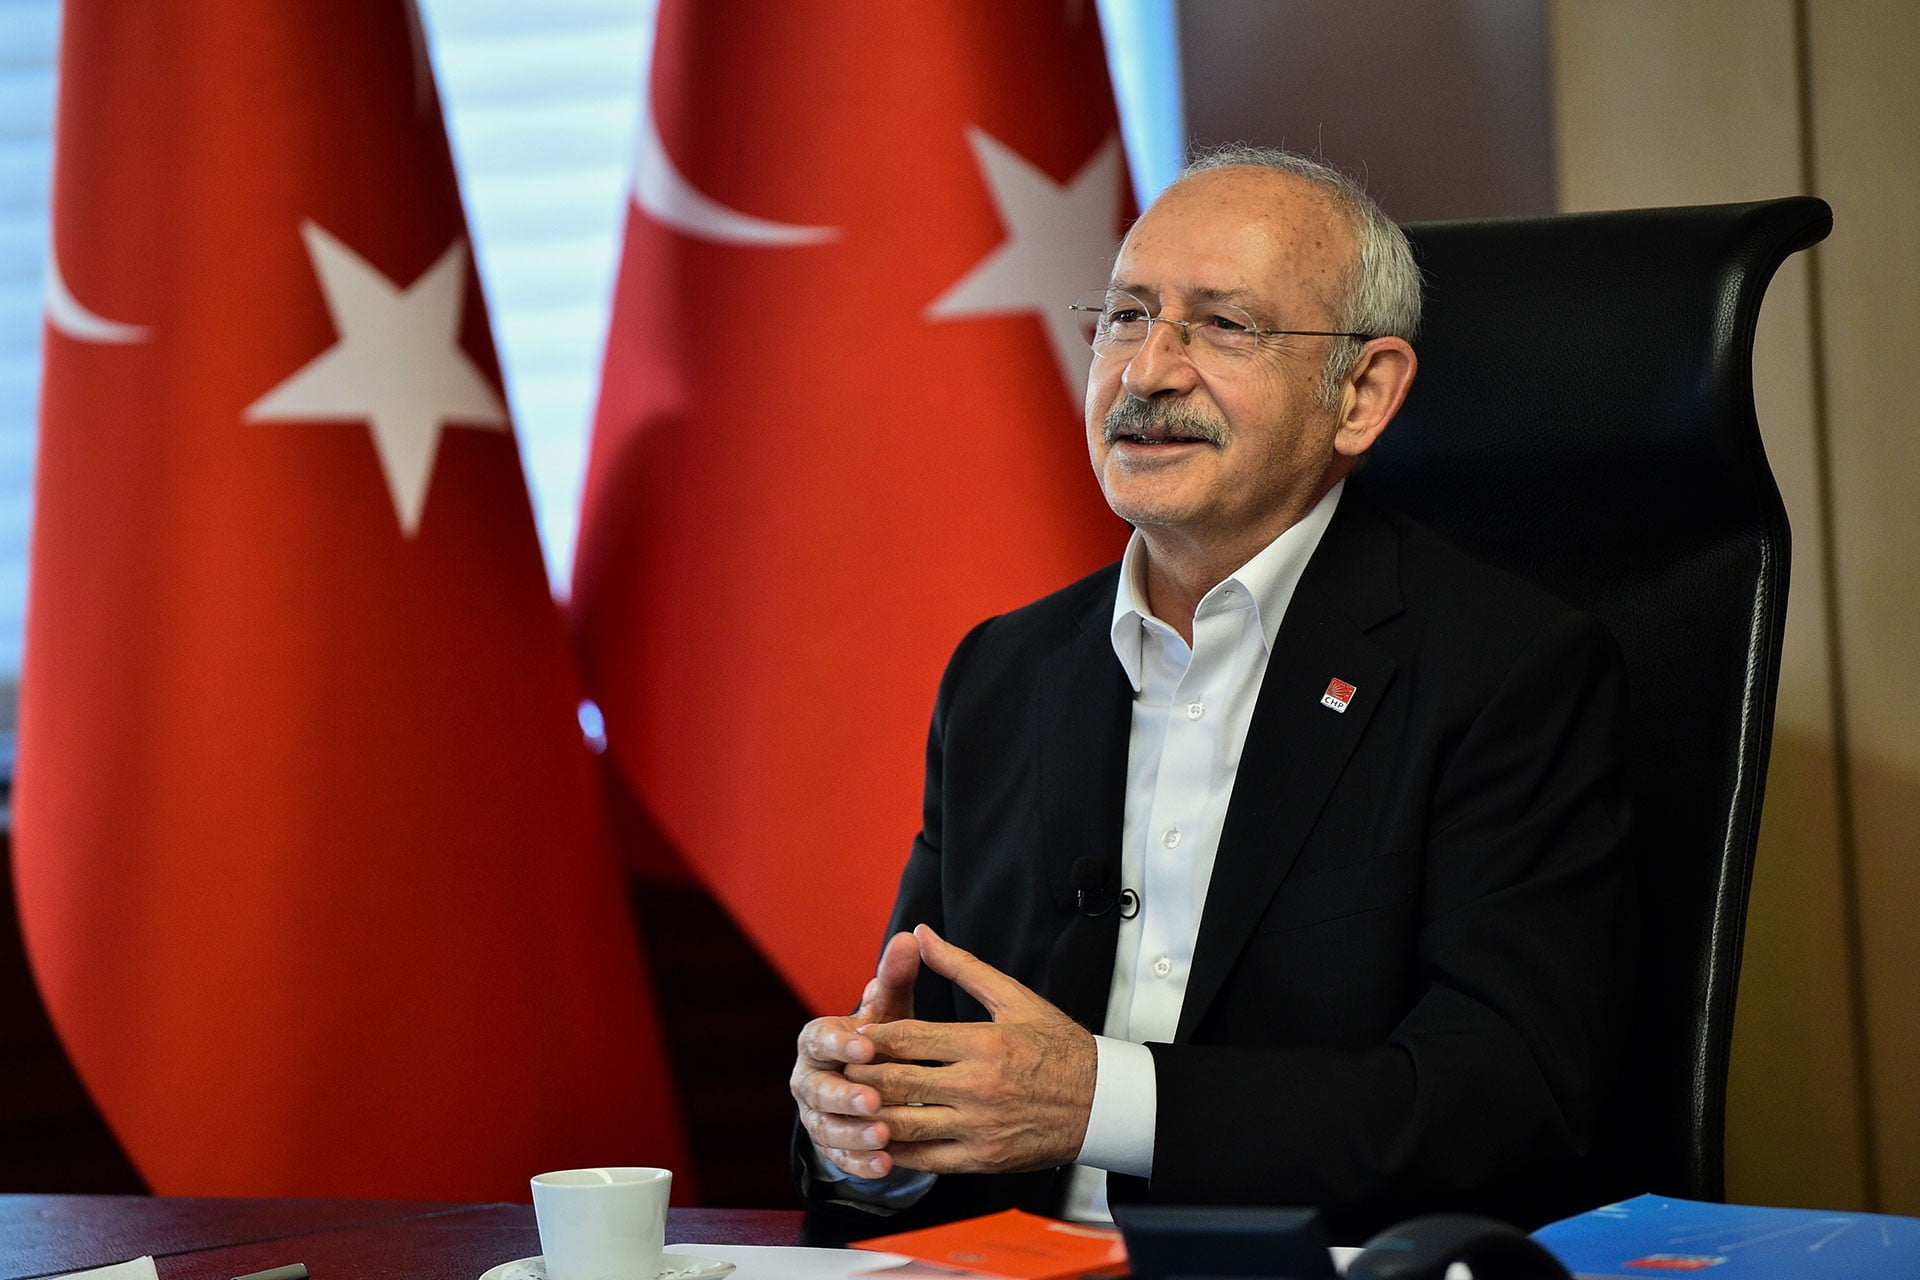 CHP Genel Başkanı Kılıçdaroğlu, Kızılçullu gençlerini tebrik etti